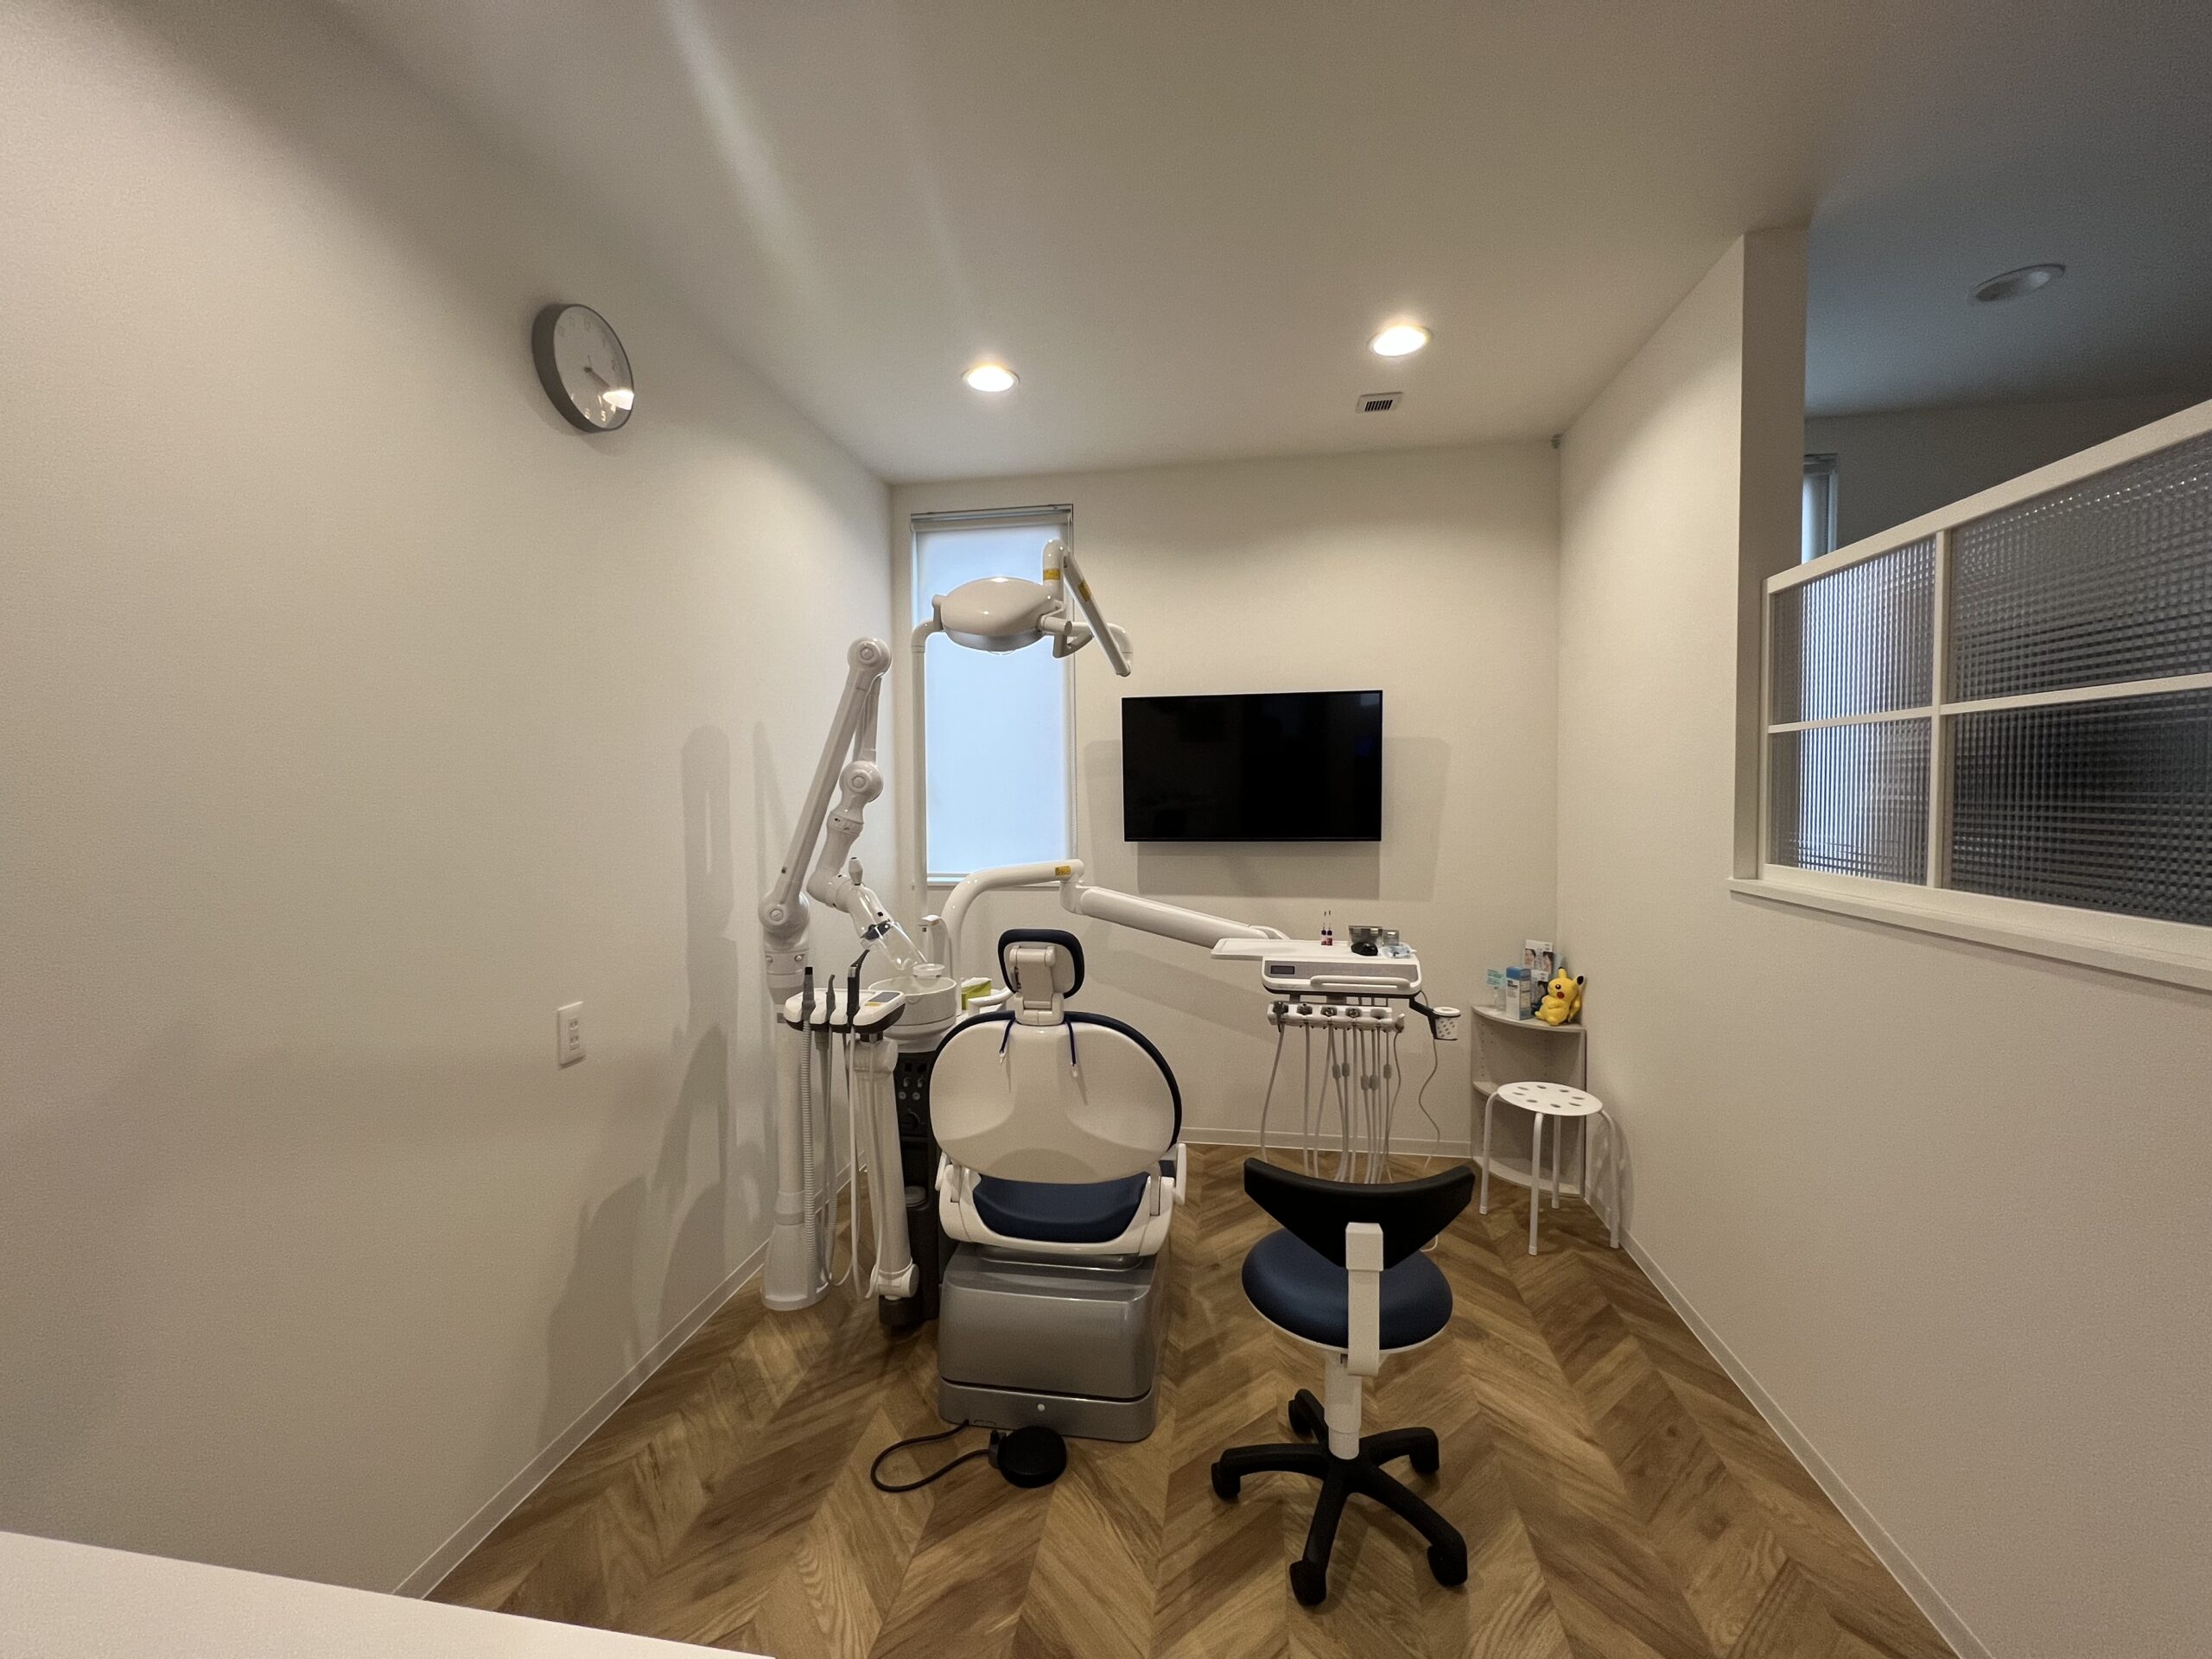 歯科医院診察ユニット。患者様のプライバシーにも配慮した個室型の診察ユニット。個室といっても開口はオープンで隣のユニットと室内窓で区切り明るさを確保した閉塞感のないユニットとなっています。